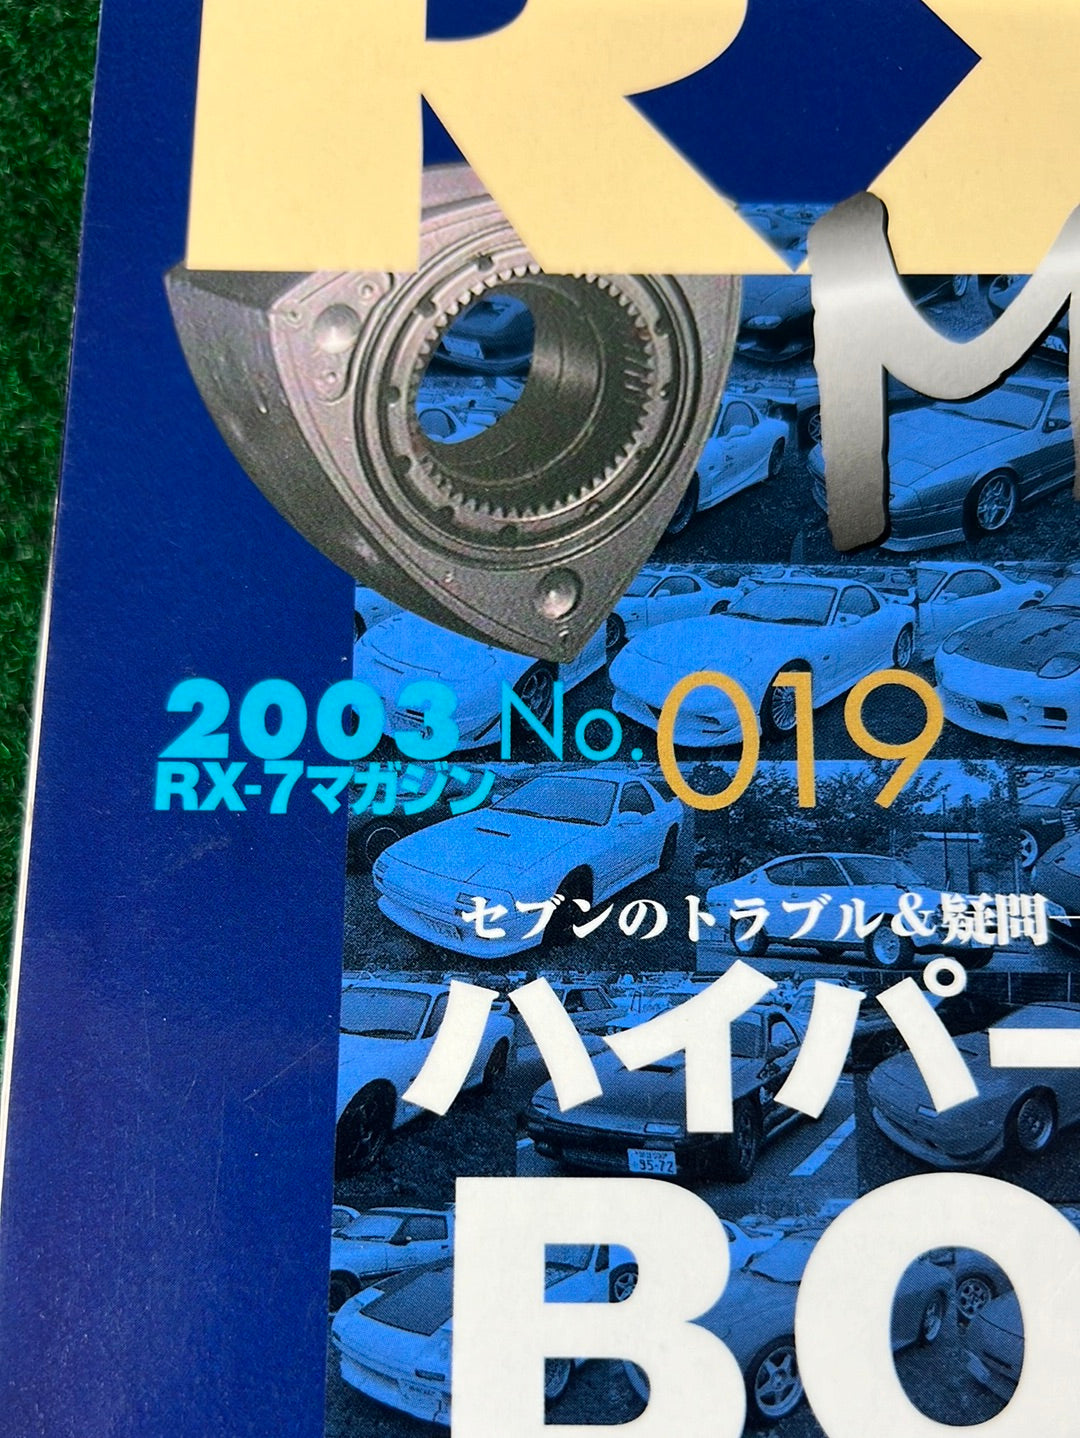 RX7 Magazine - No. 016 through No. 019